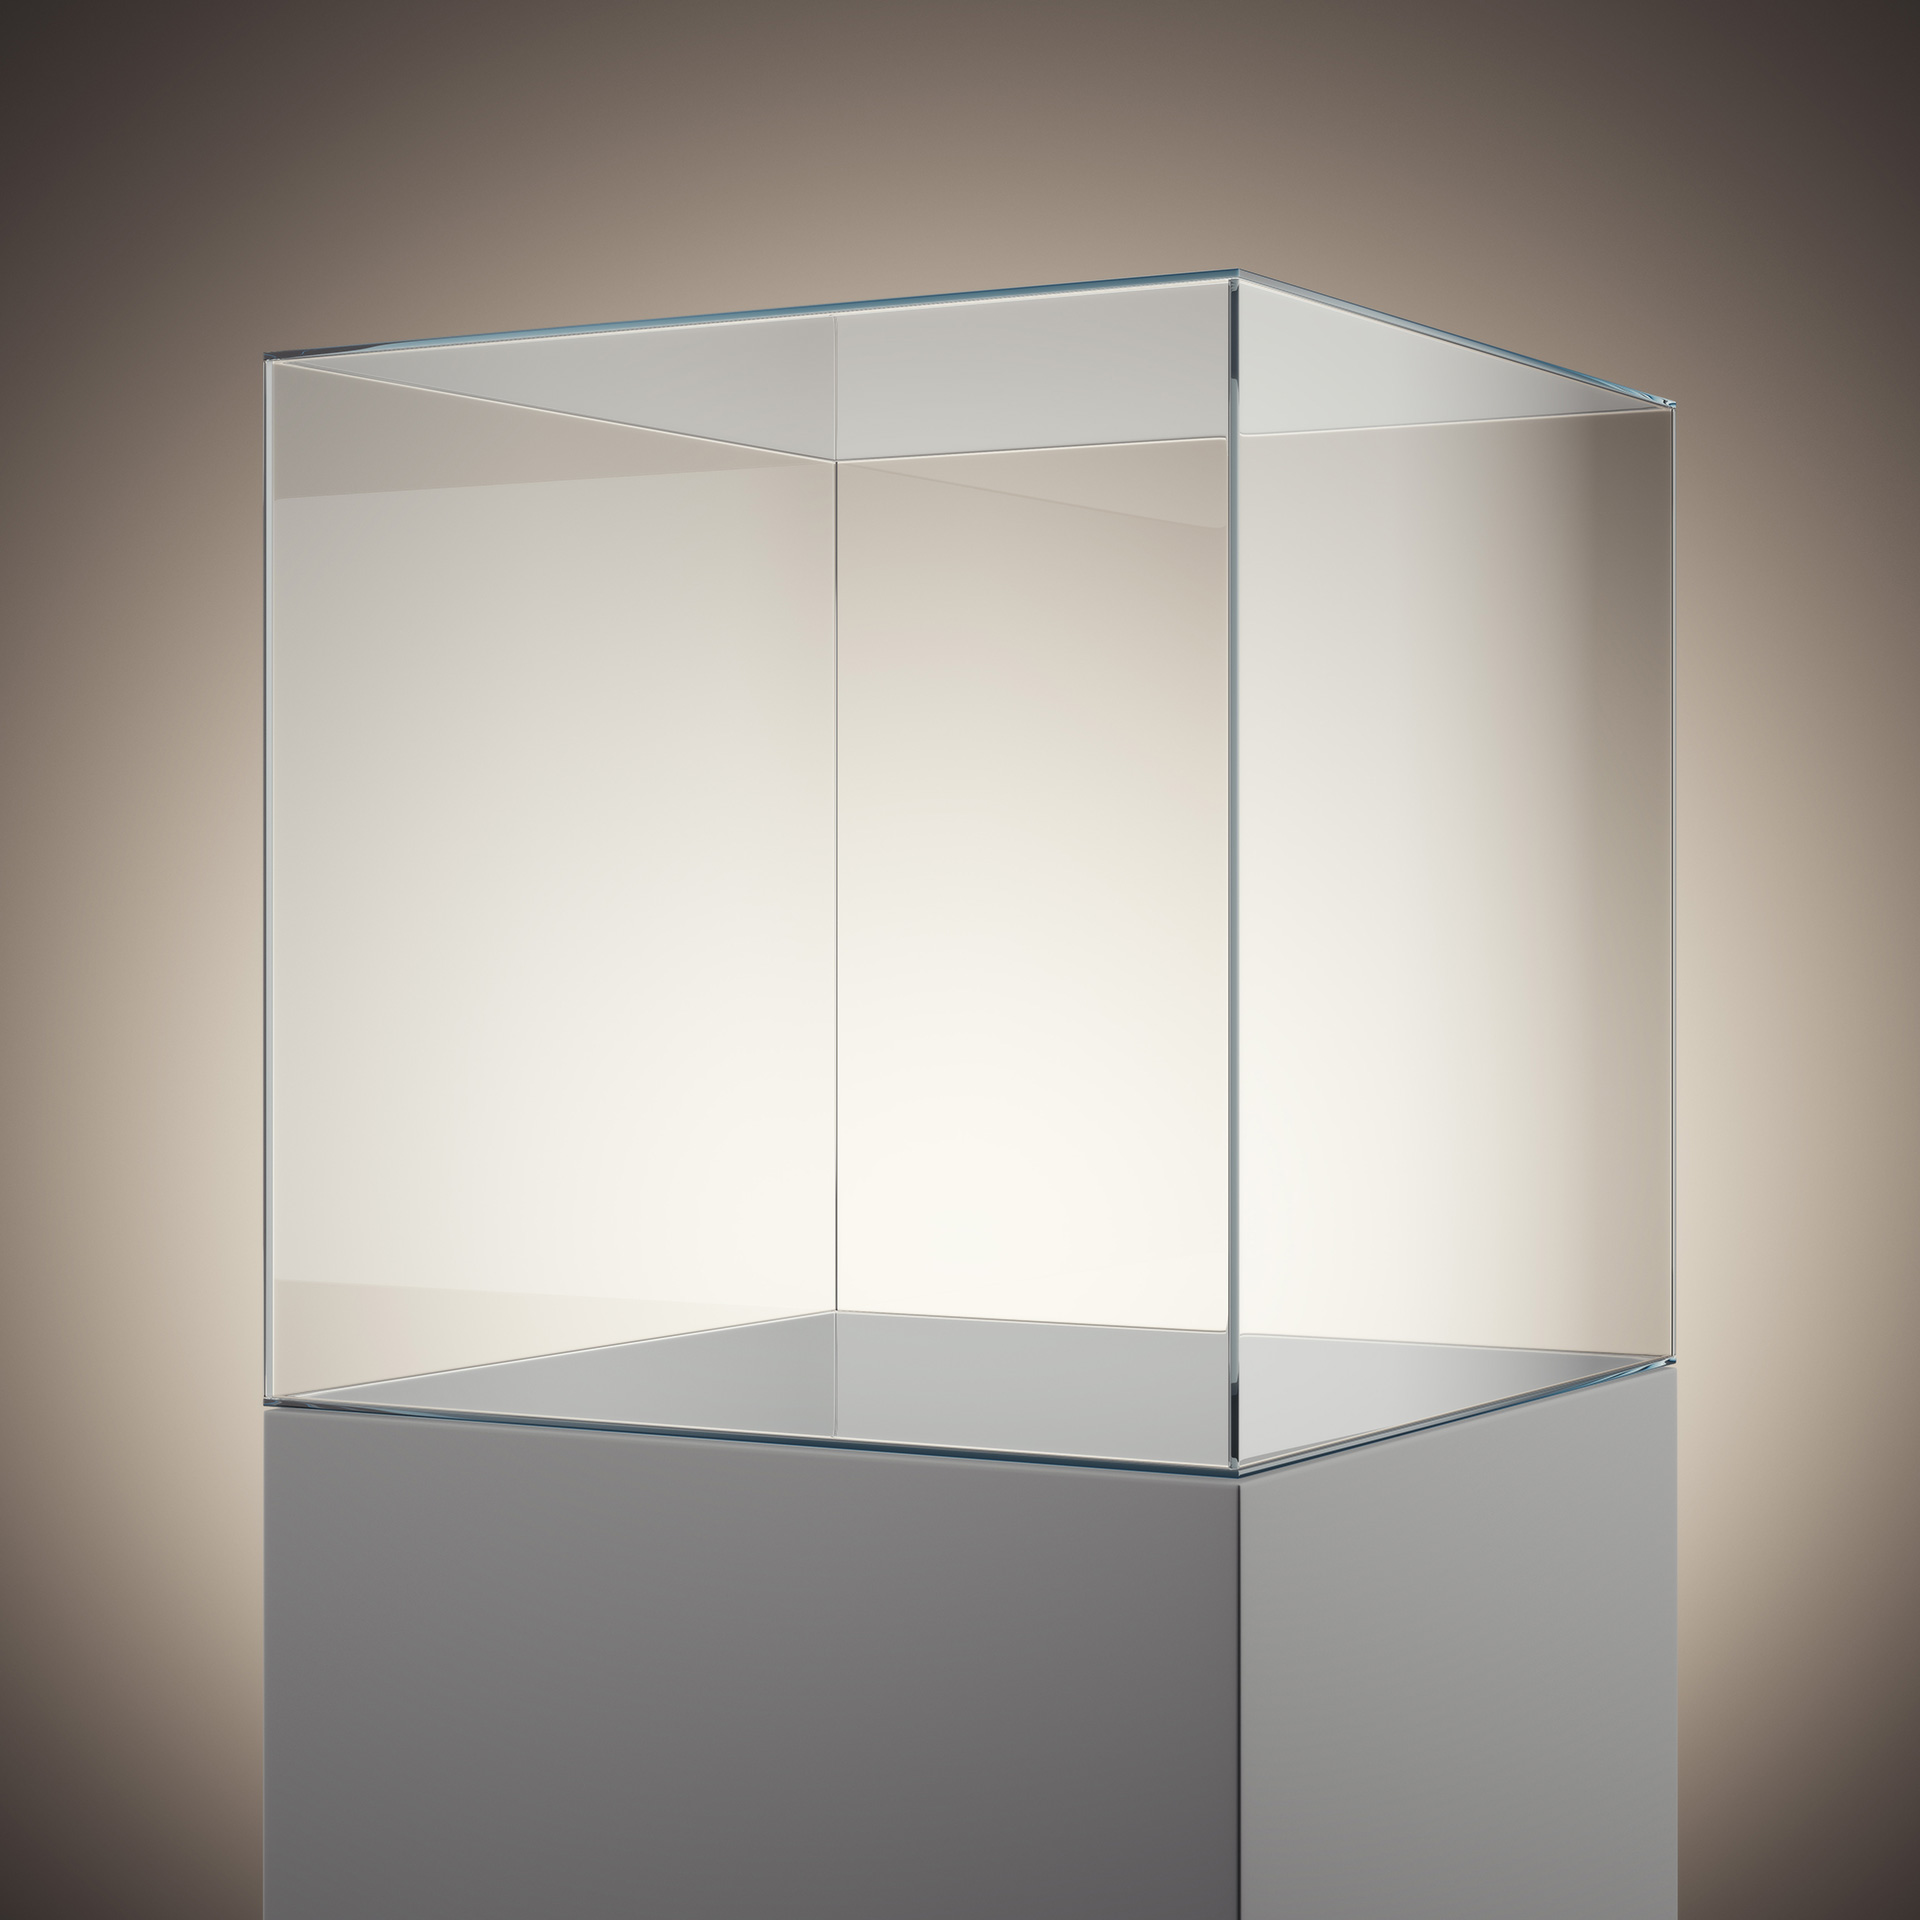 Uitbreiden Drijvende kracht rekenmachine UV verlijmen - Glas op glas (onzichtbaar) lijmen - Evers & Evers